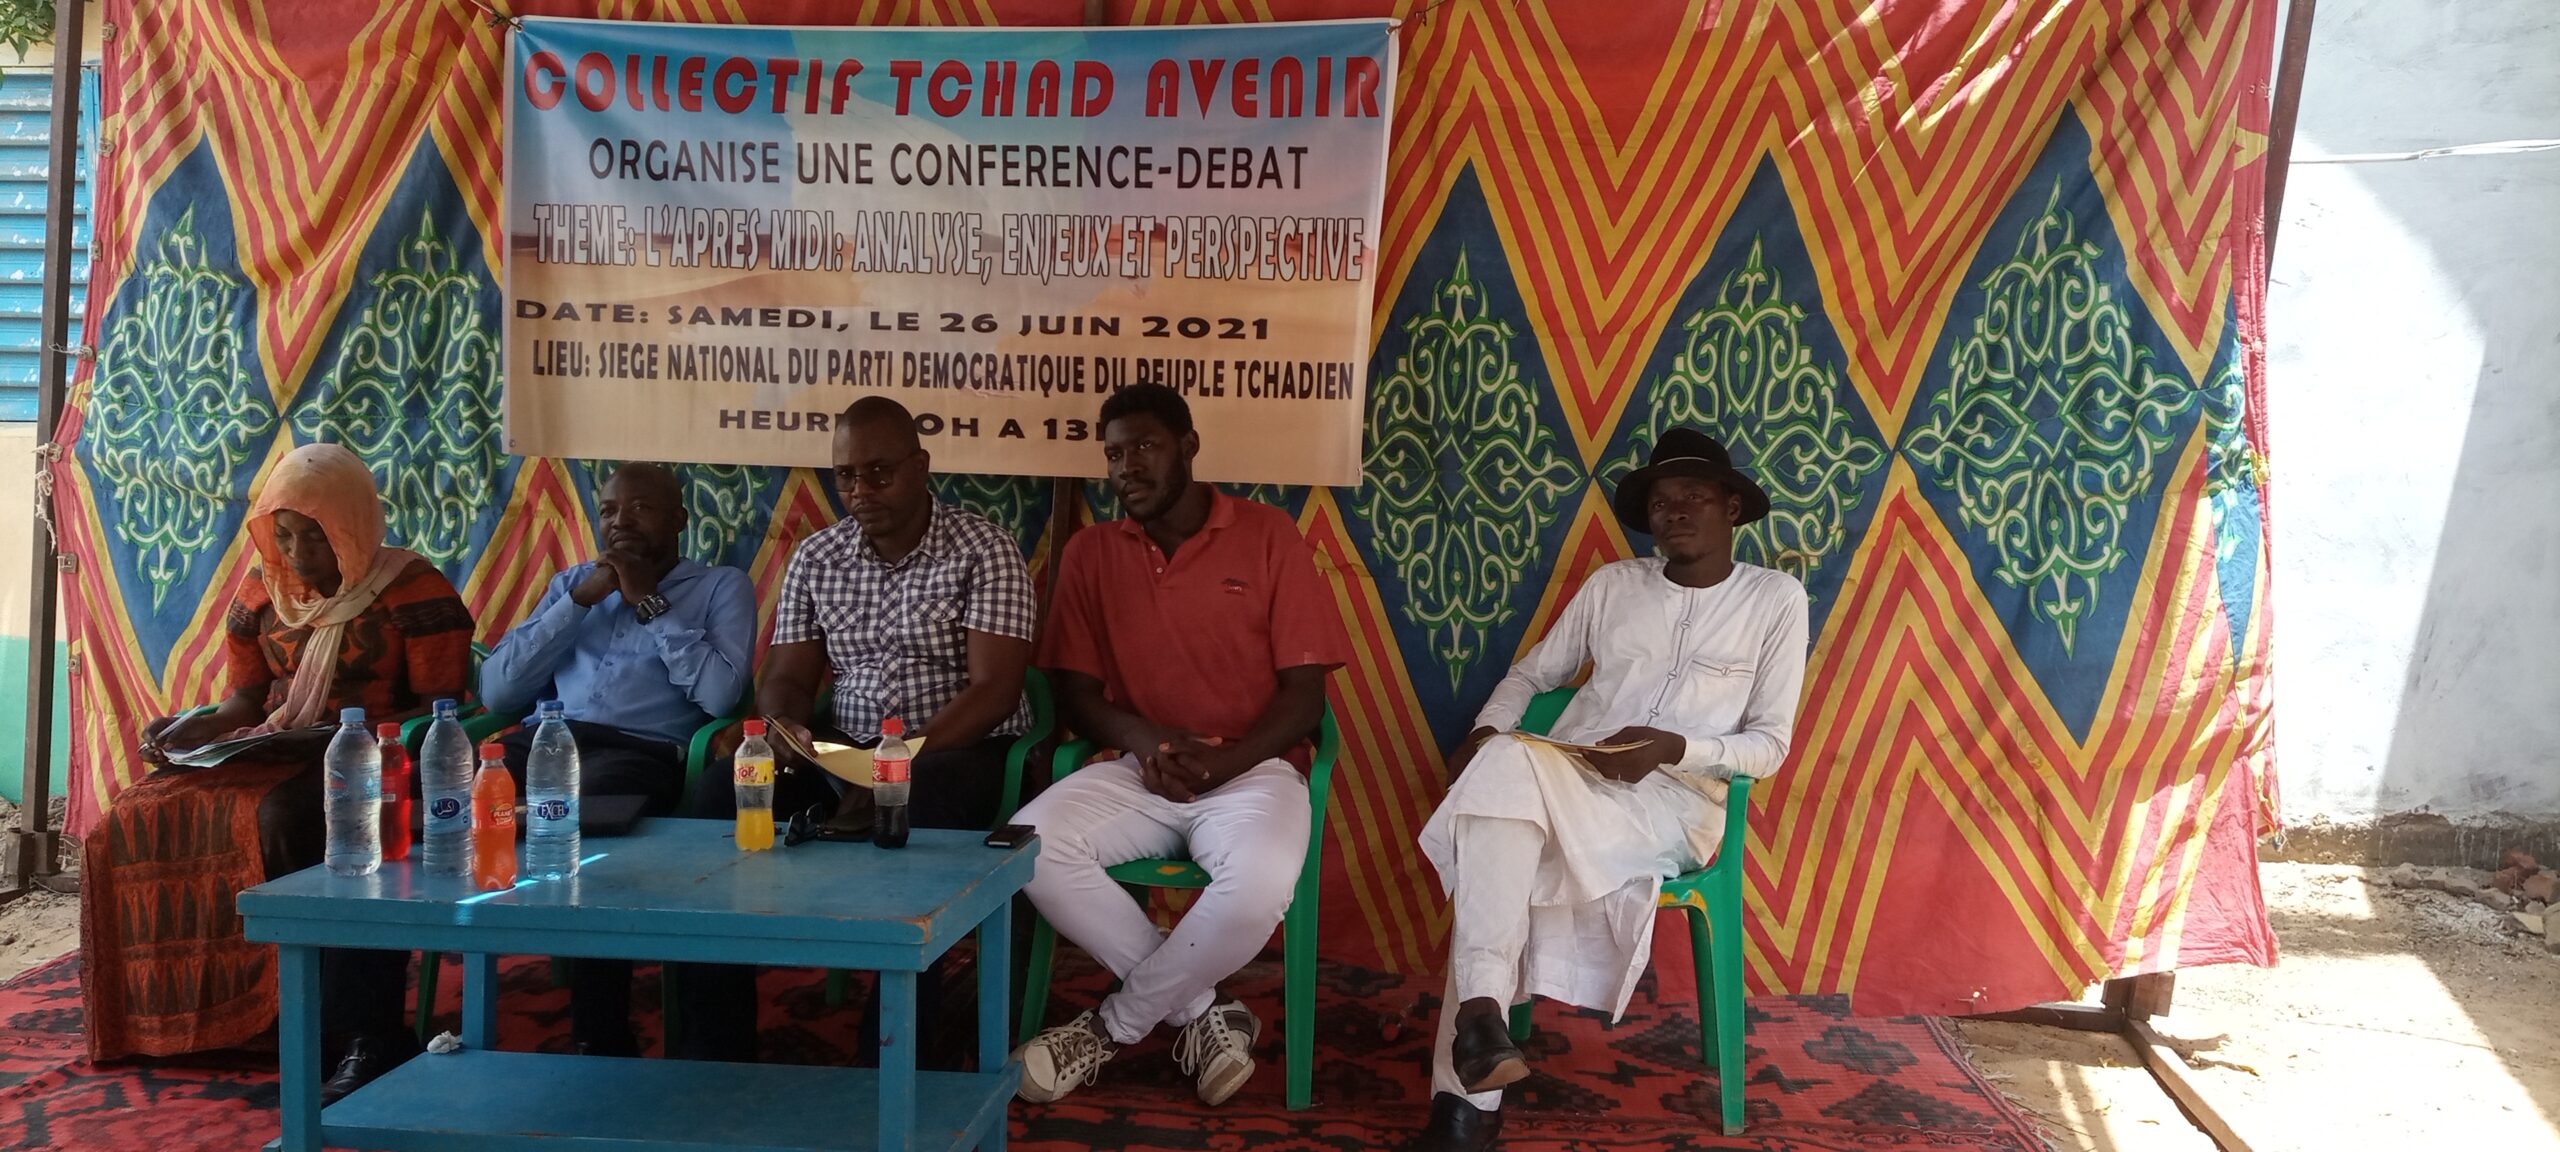 Le Collectif Tchad avenir préoccupé par la gestion de la transition